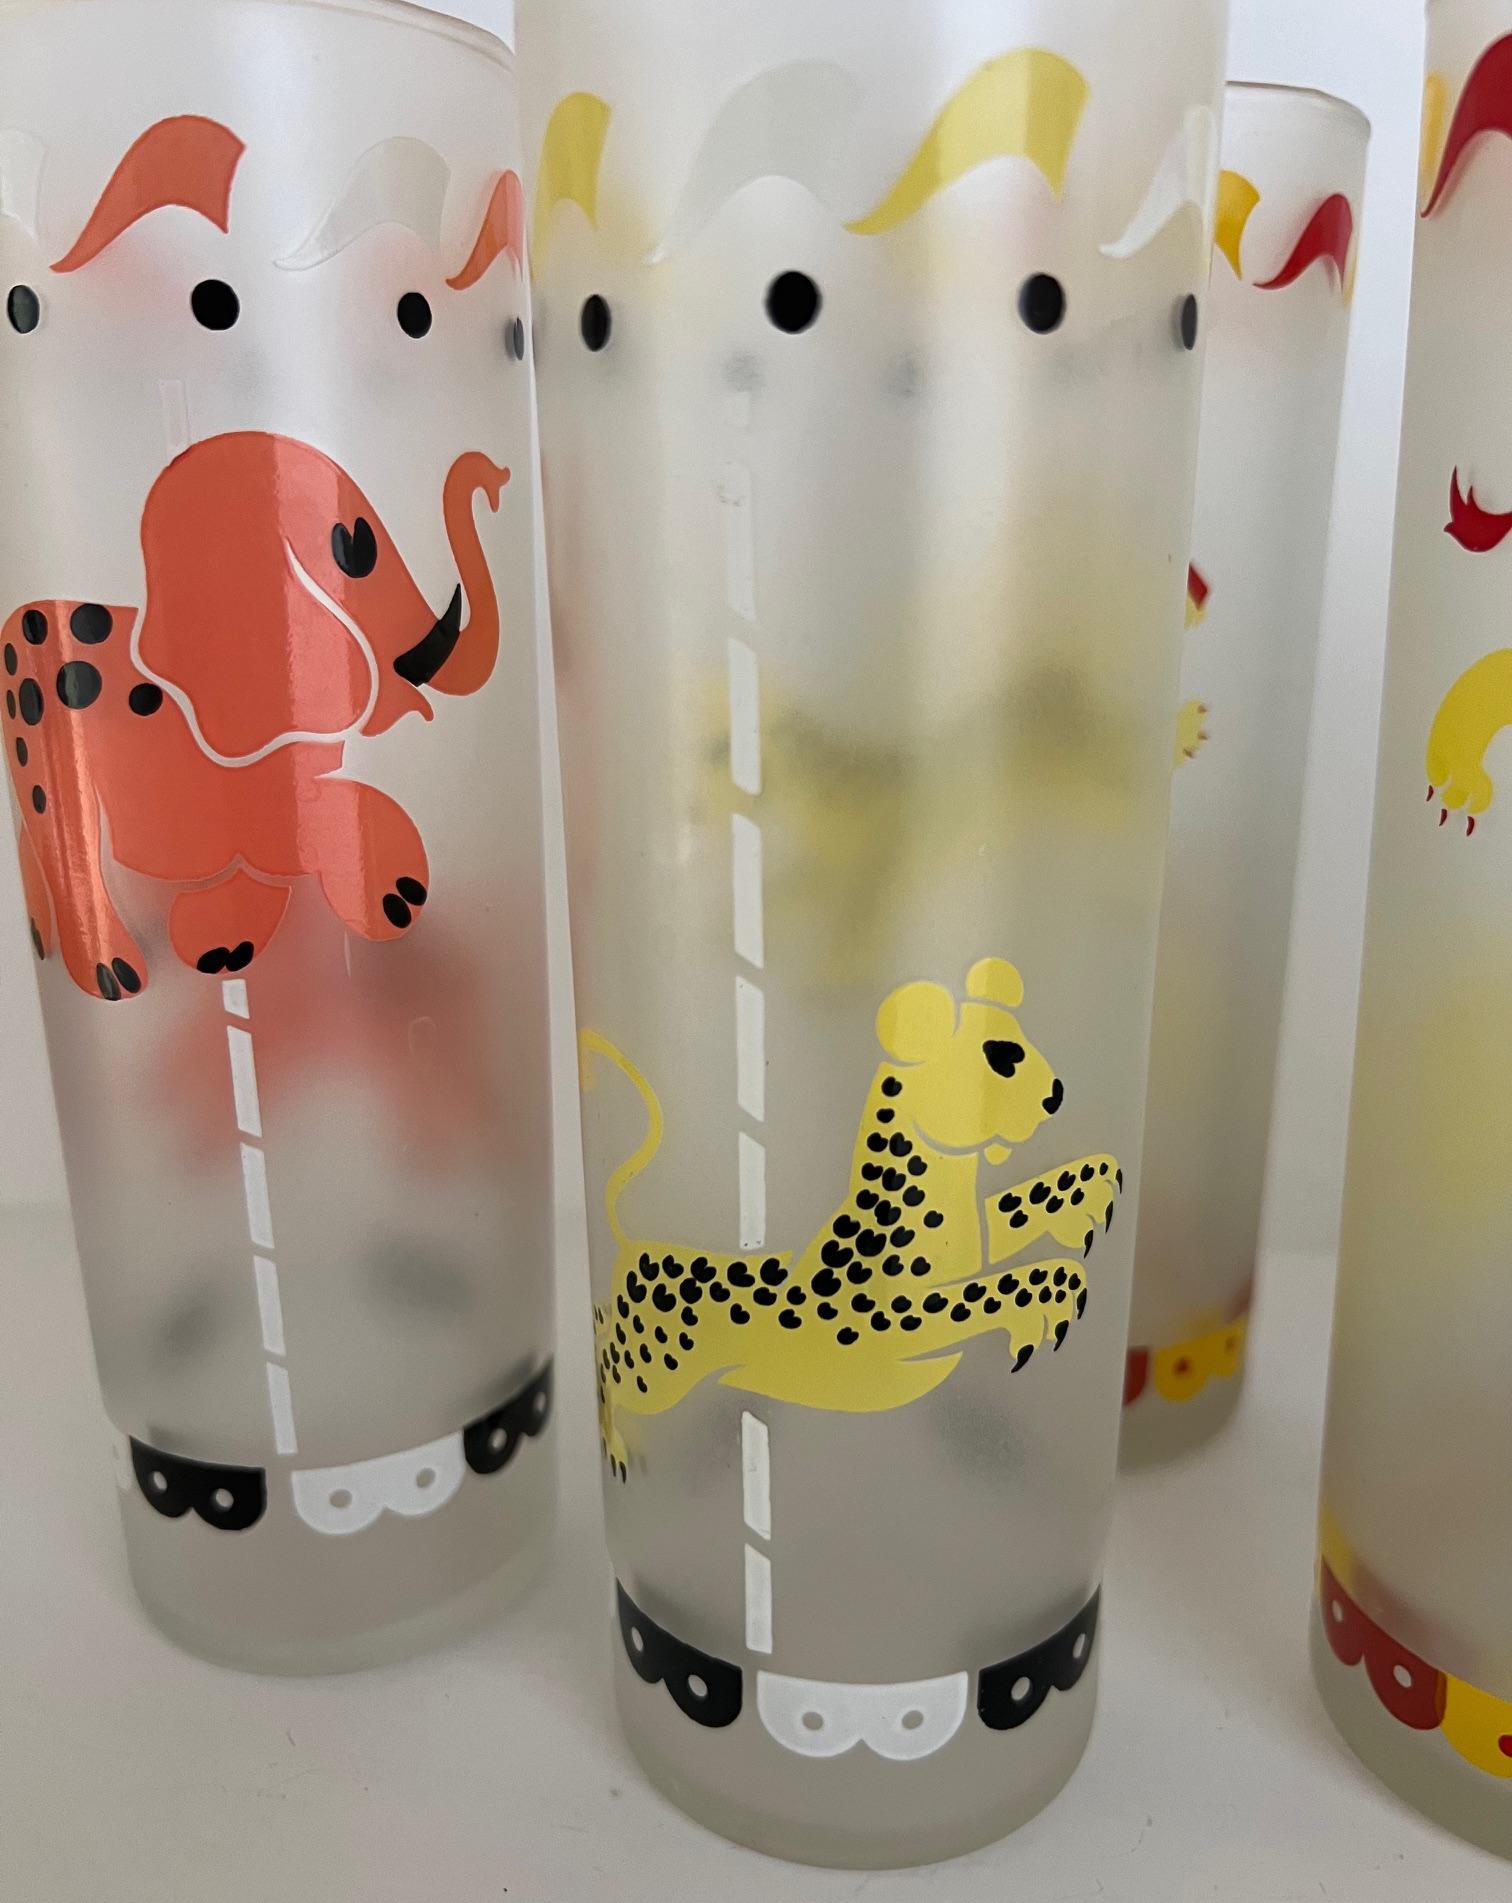 Vintage-Set von Libbey-Gläsern aus geblasenem Glas, jedes in einer anderen Farbe und mit einem anderen Karusselltier. Die Tiere sind in Emaille auf einem mattierten Grund dargestellt, wobei sich auf jeder Seite des Glases ein Tier in angehobener und